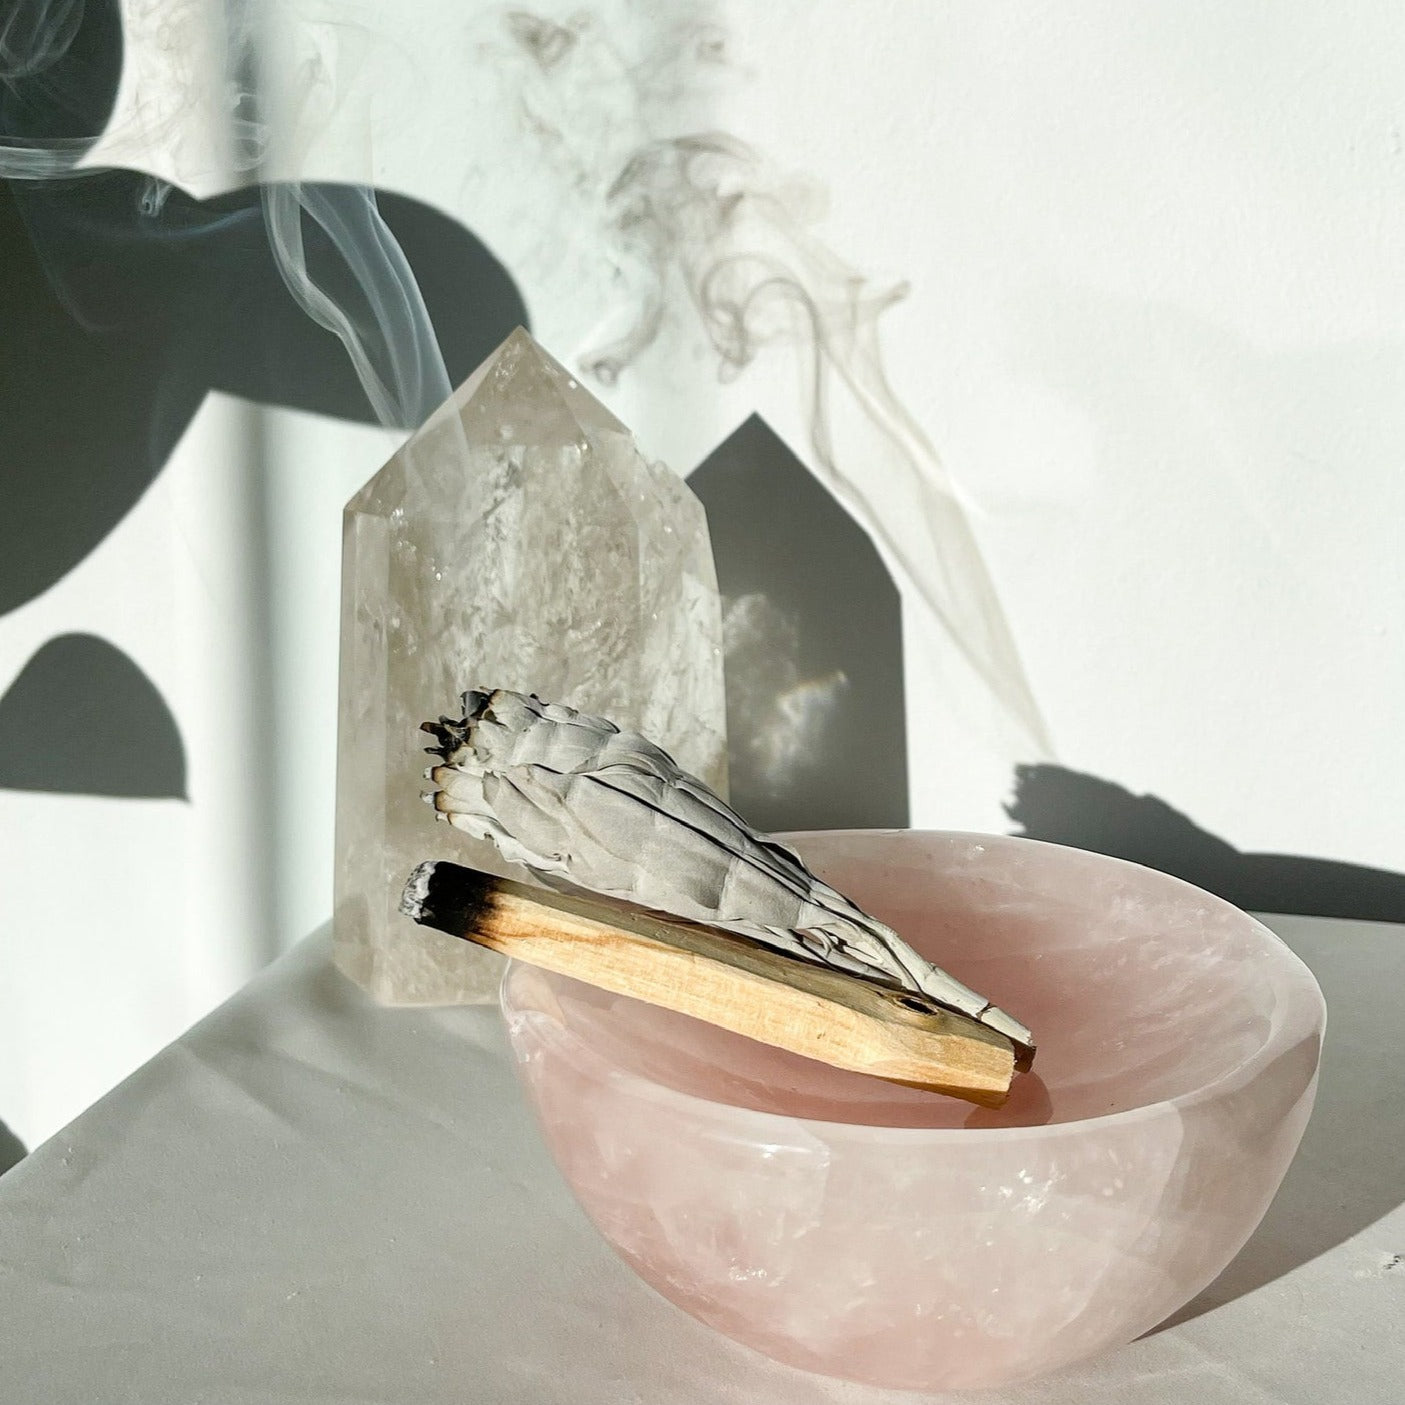 Rose quartz crystal bowl / carved dish large 1-1.5kg